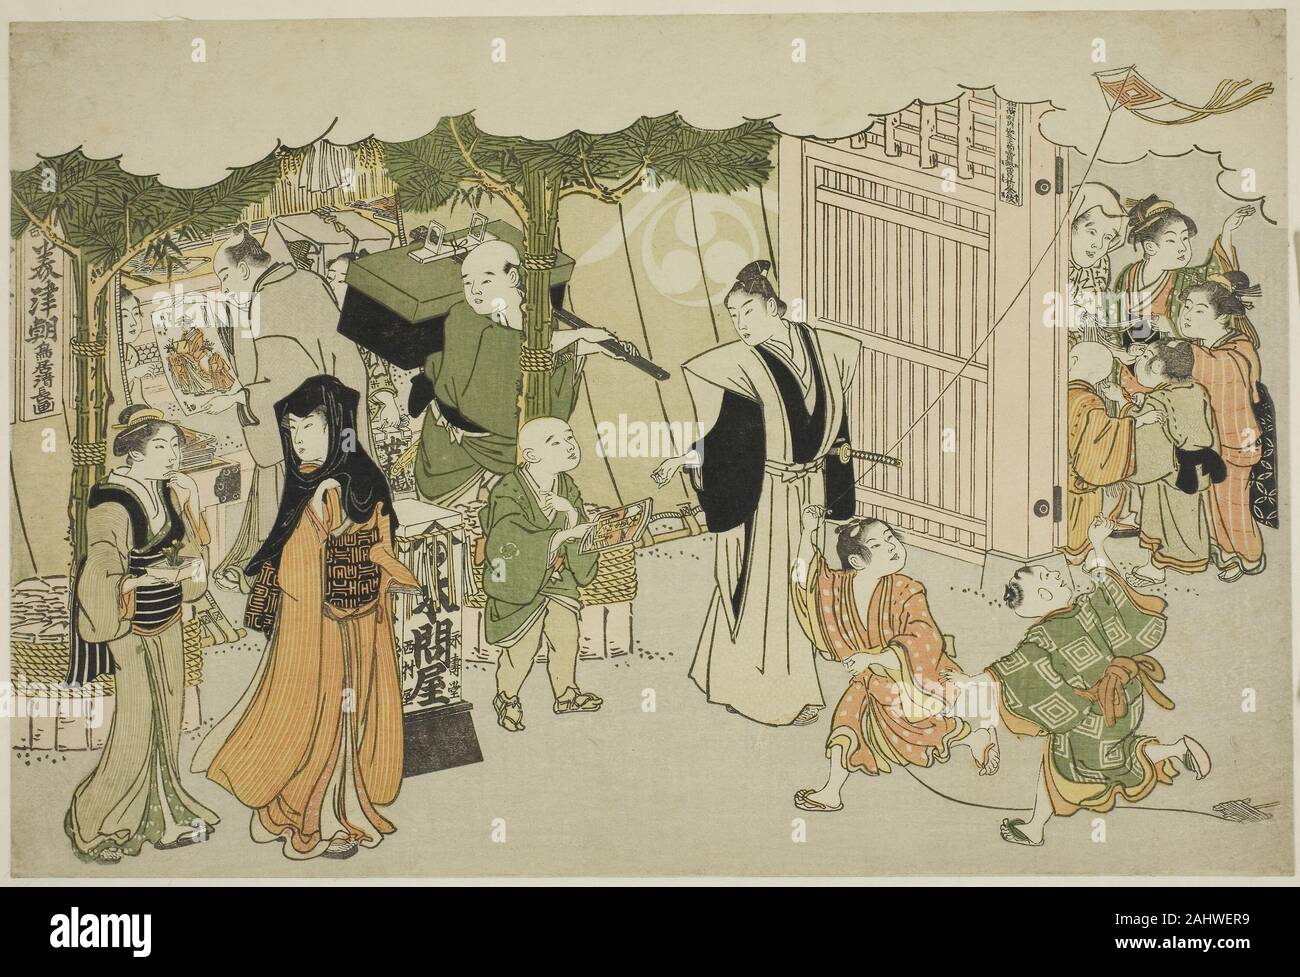 Япония в древности